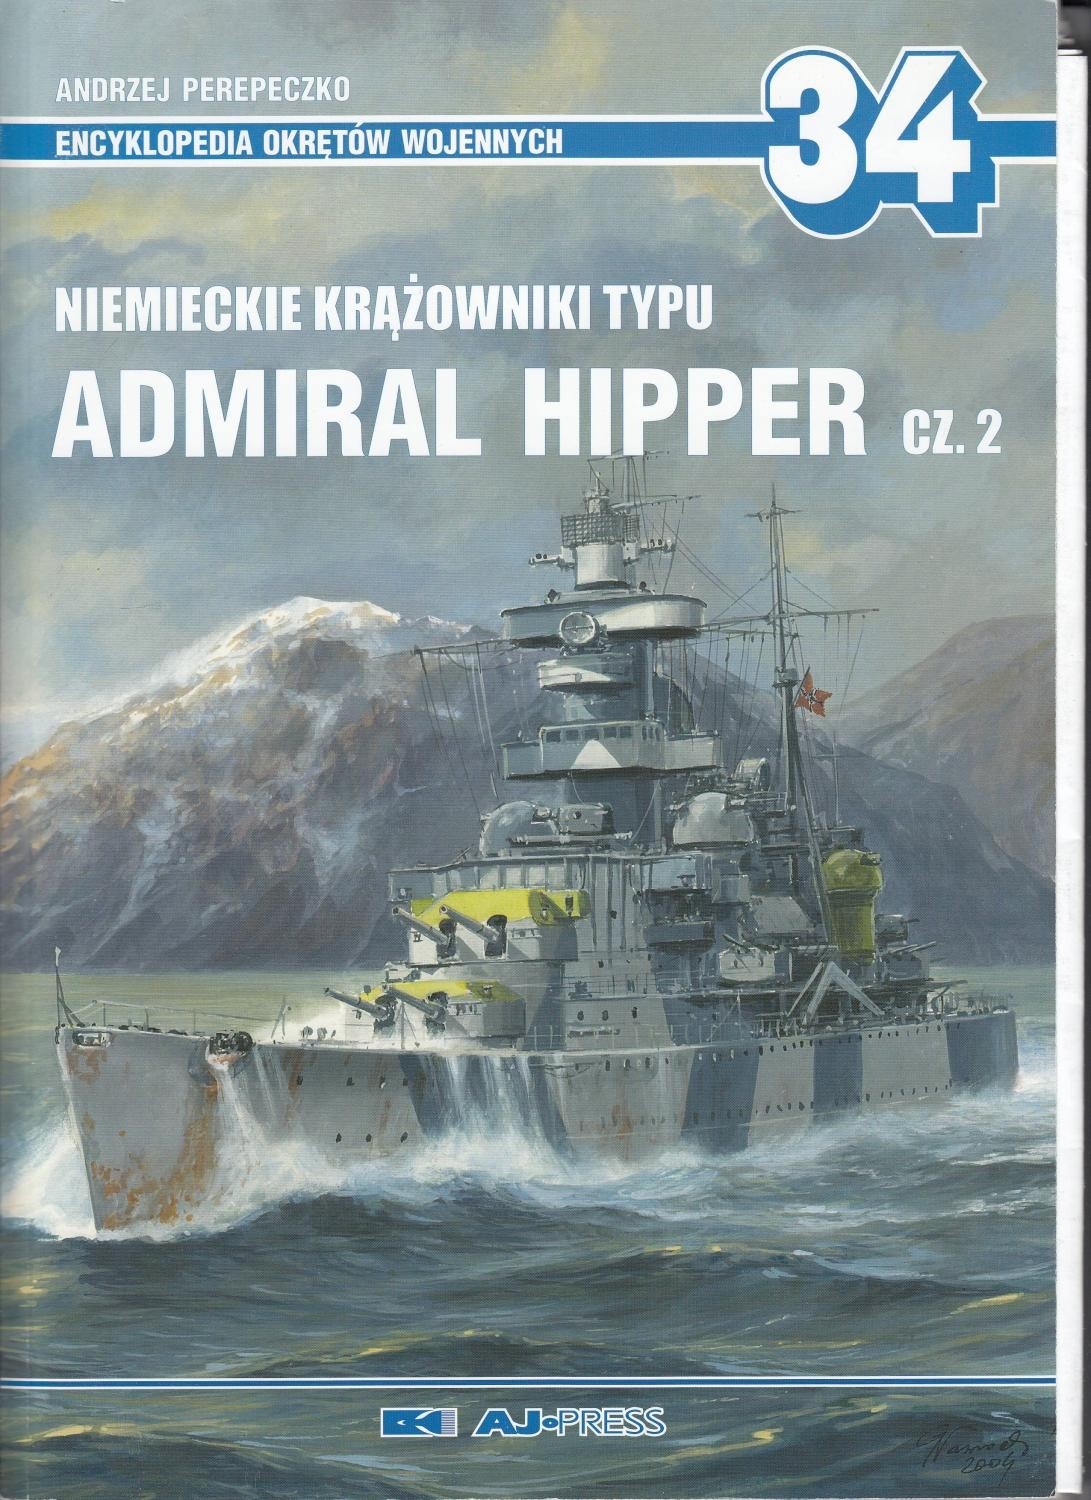 German Admiral Hipper-Class Cruisers pt. 2